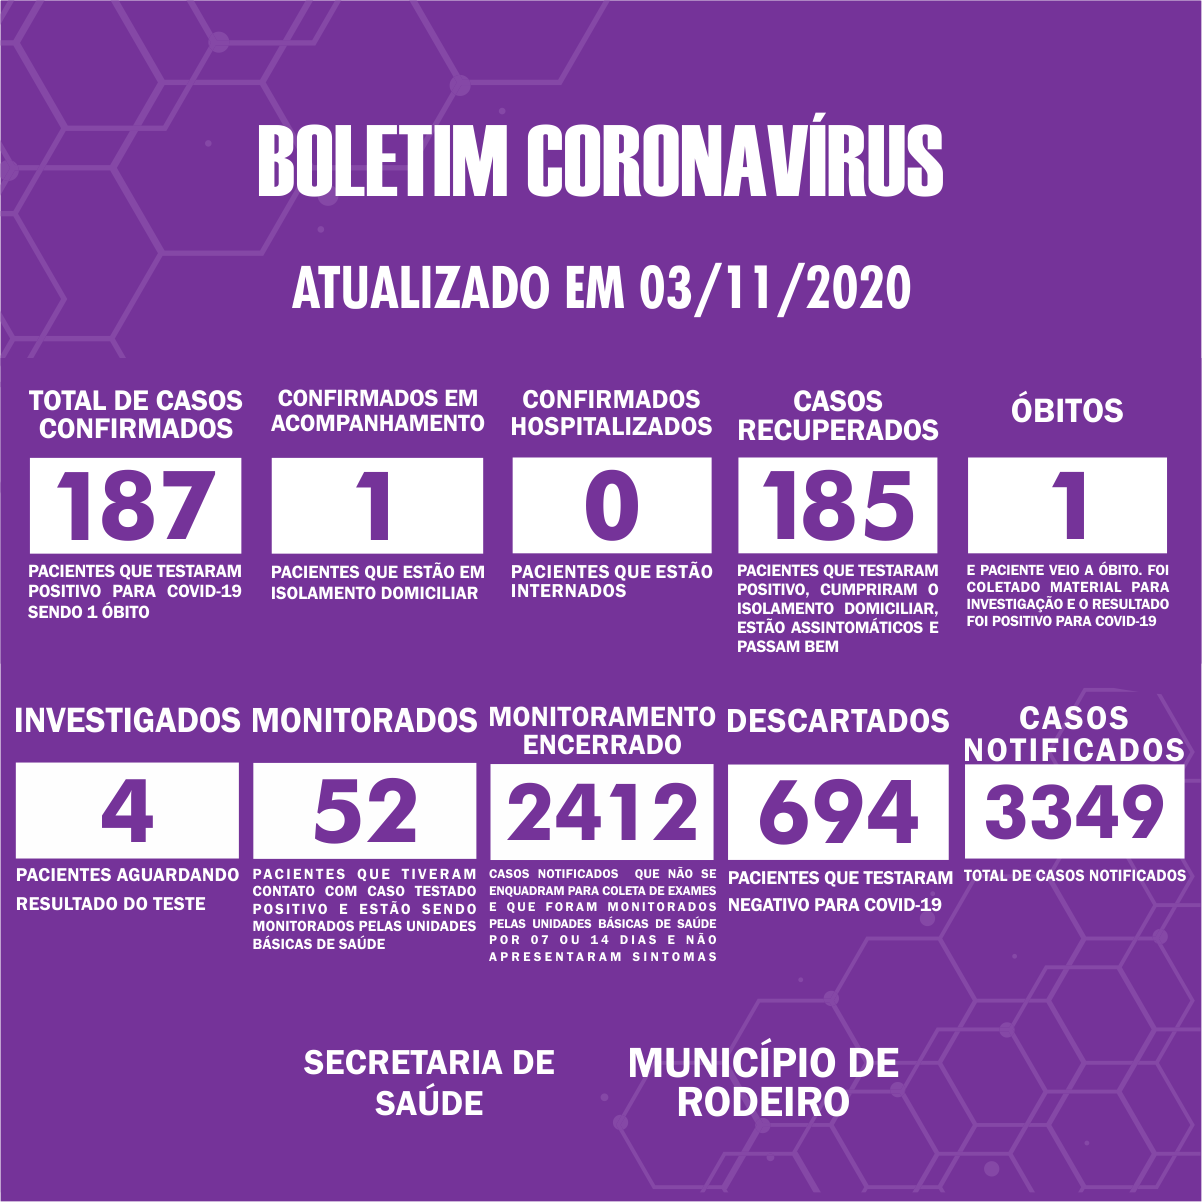 Boletim Epidemiológico do Município de Rodeiro sobre coronavírus, atualizado em 03/11/2020